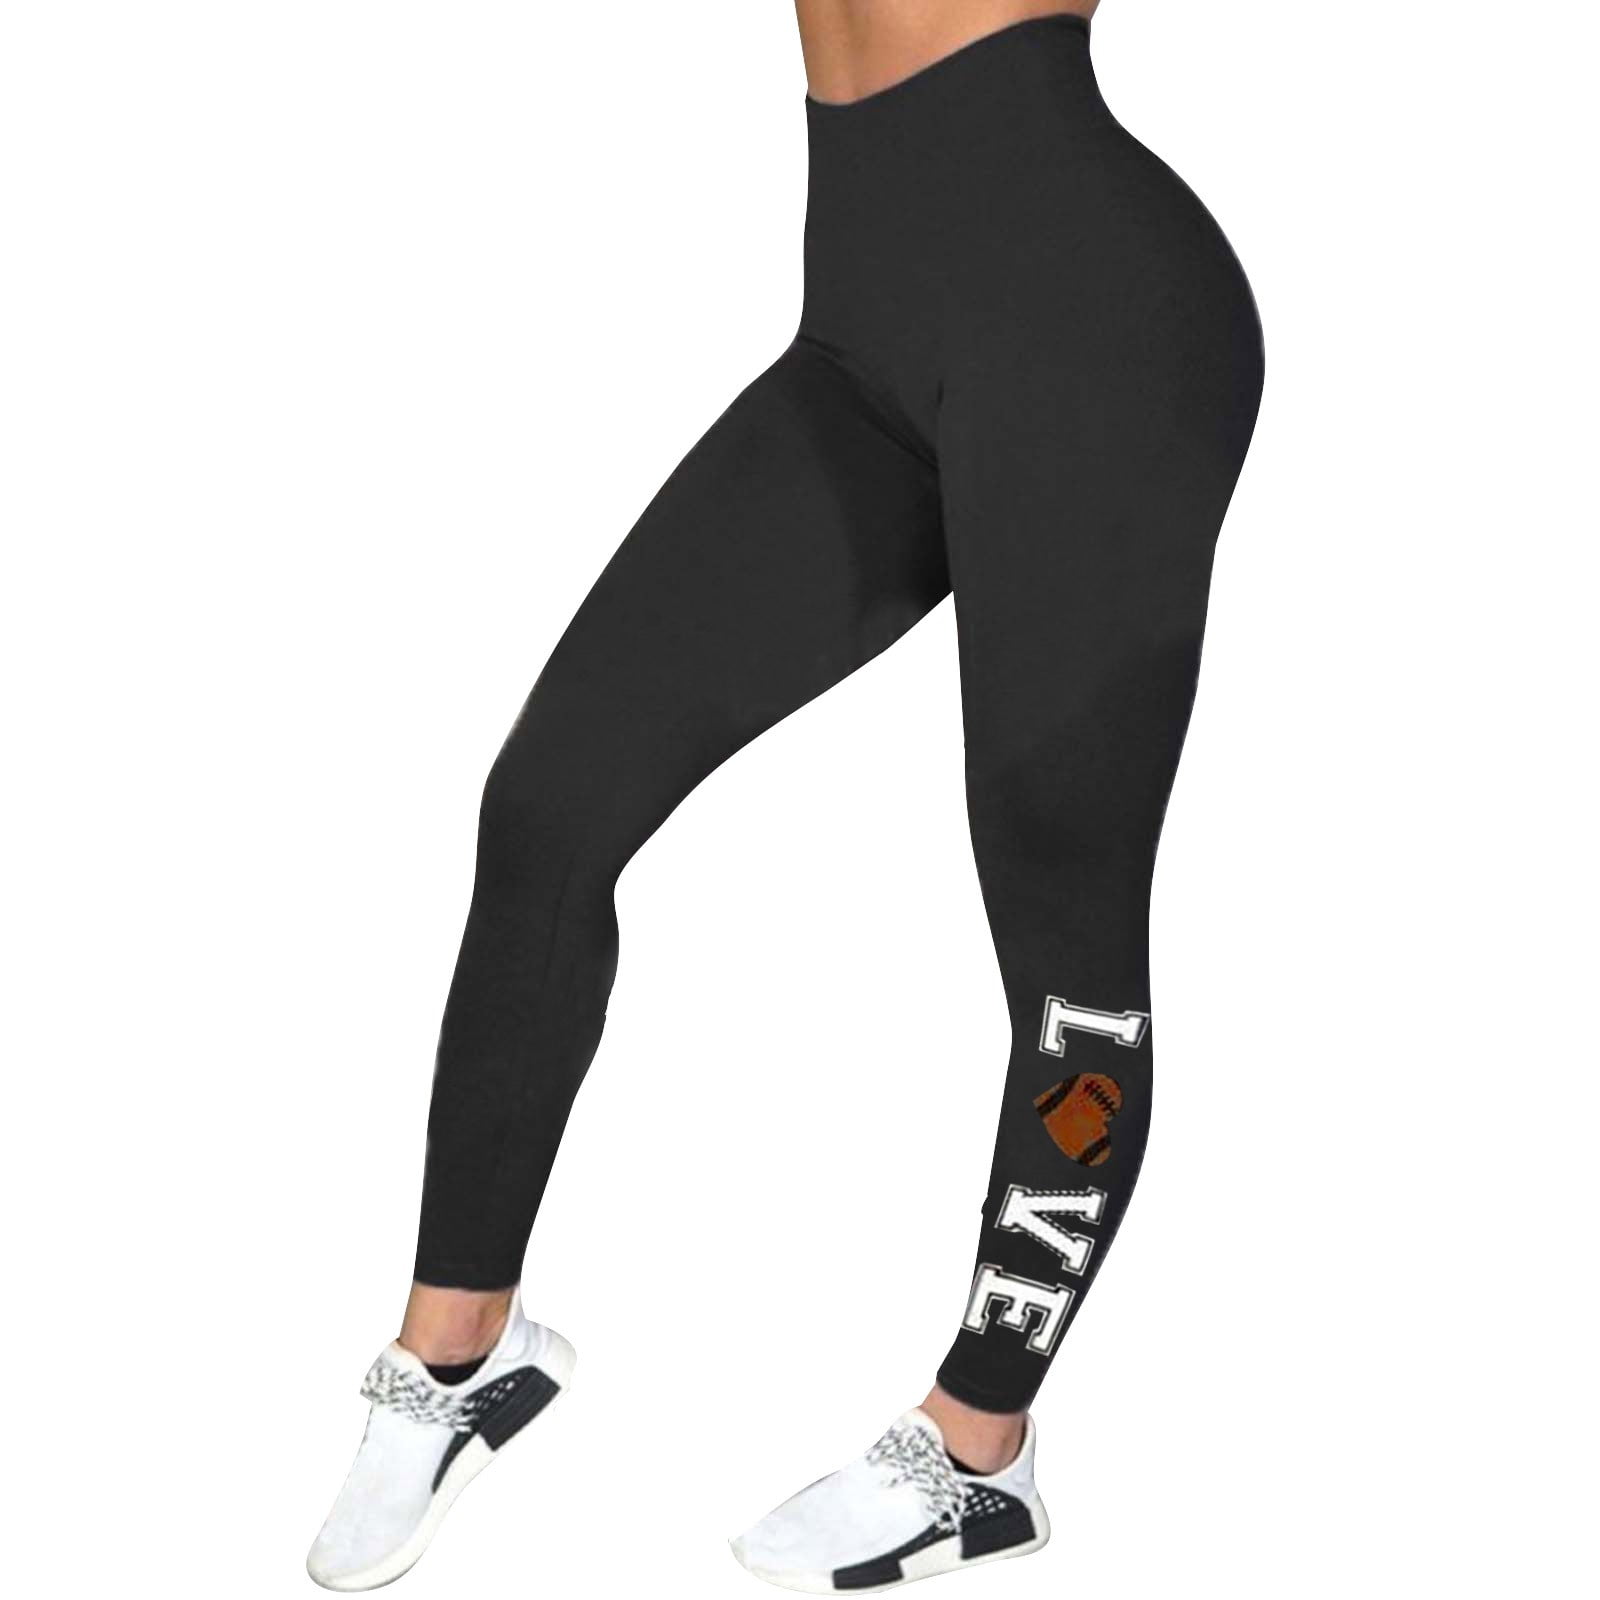 pseurrlt Football Print Women's High Waist Fashion Capri Leggings Skinny  Pants for Yoga Running 